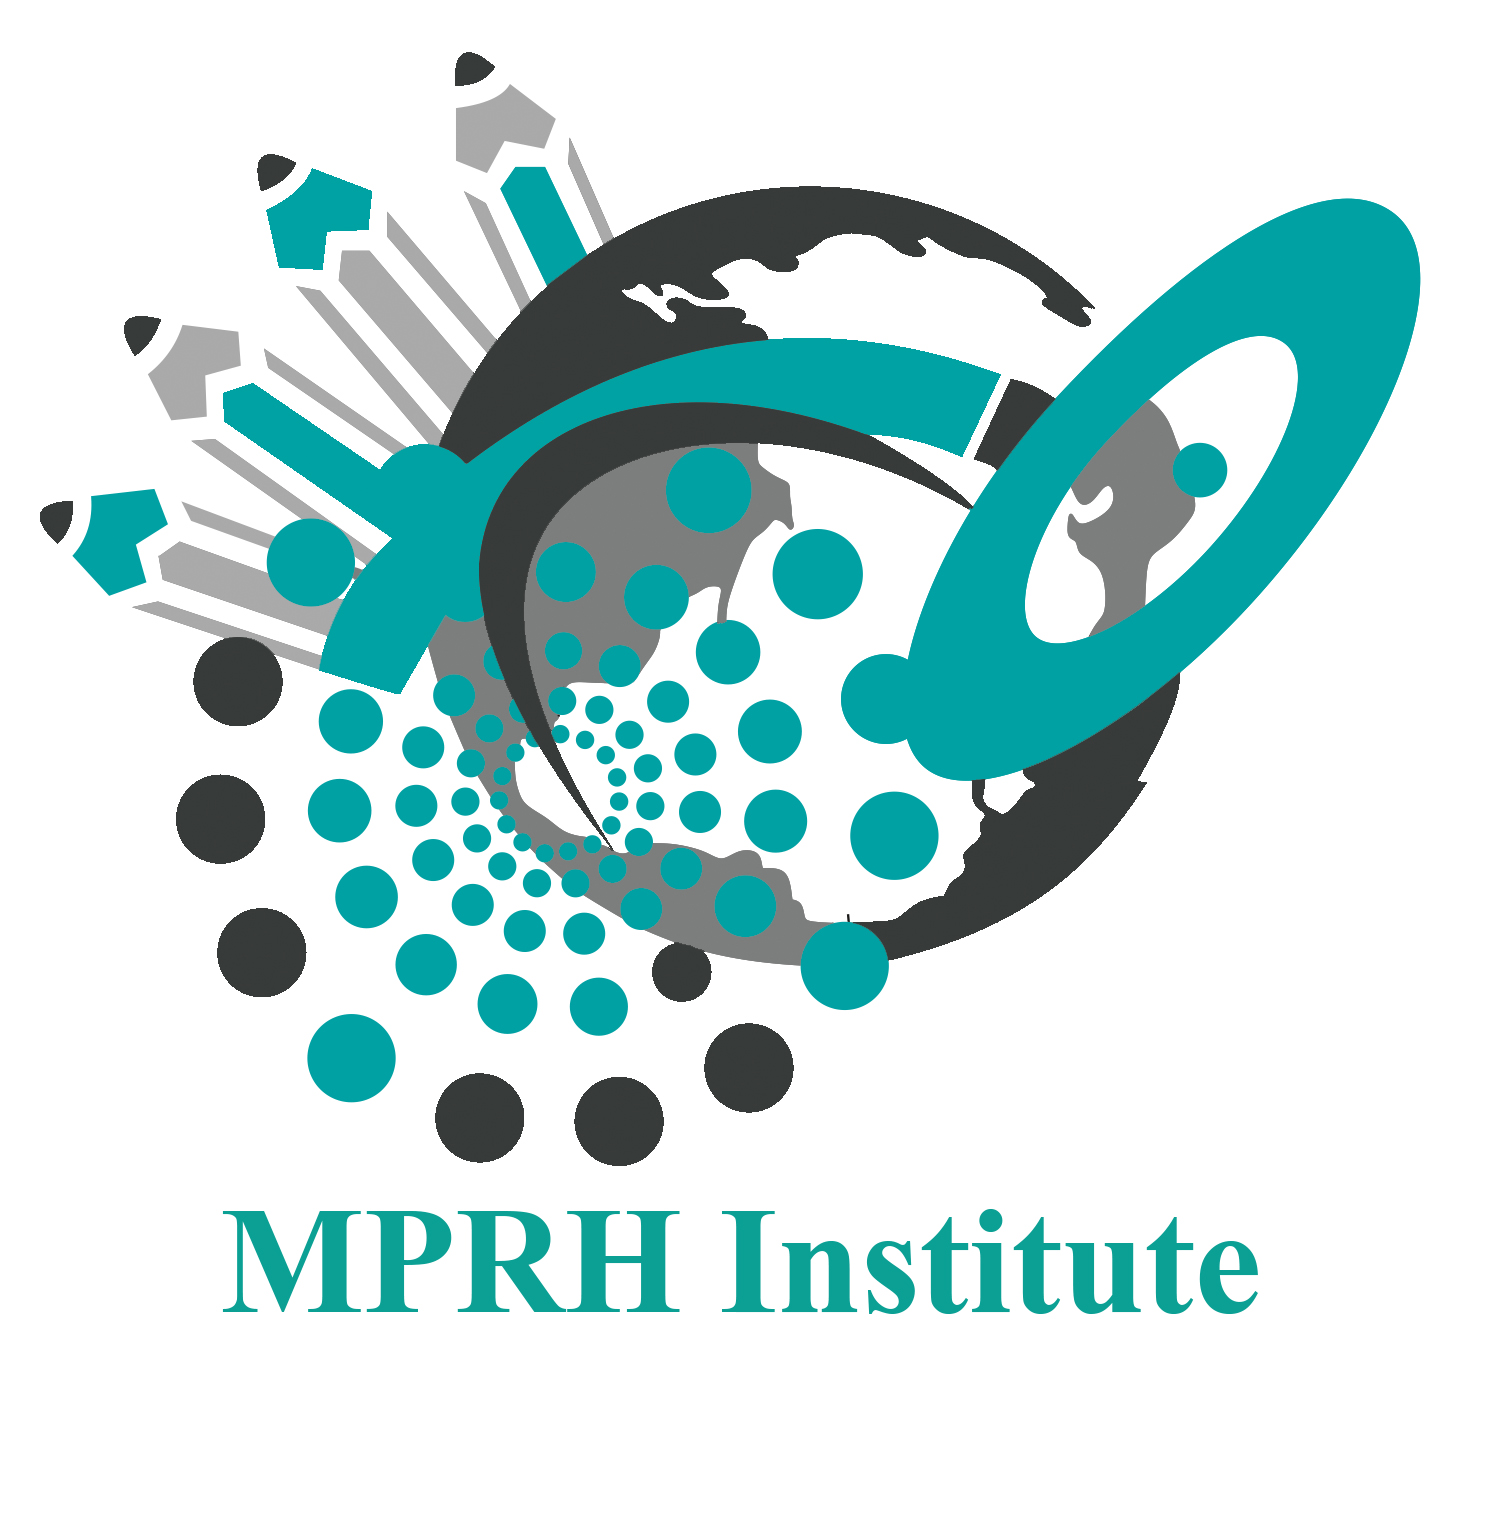 MPRH Institute